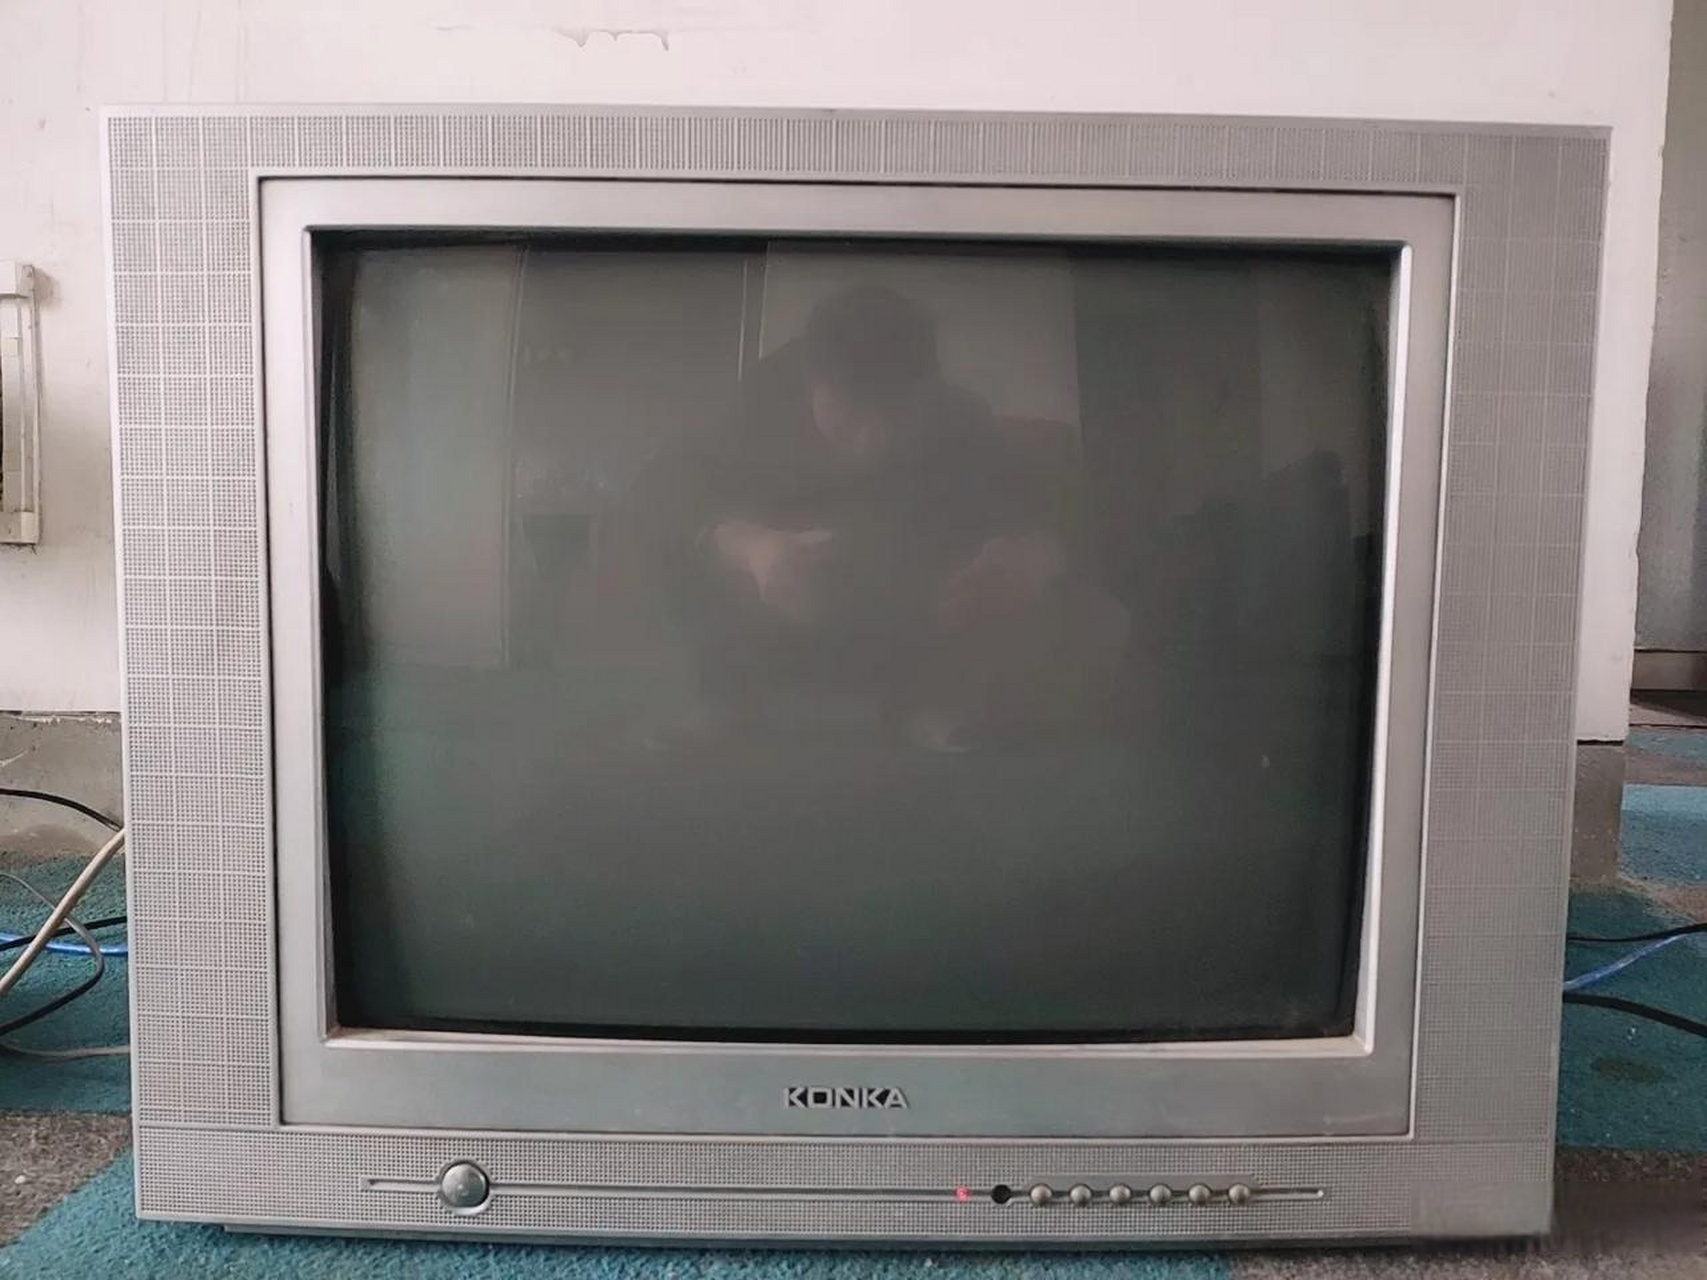 我家第一台电视就是康佳彩色电视机,到现在二十多年还正常看